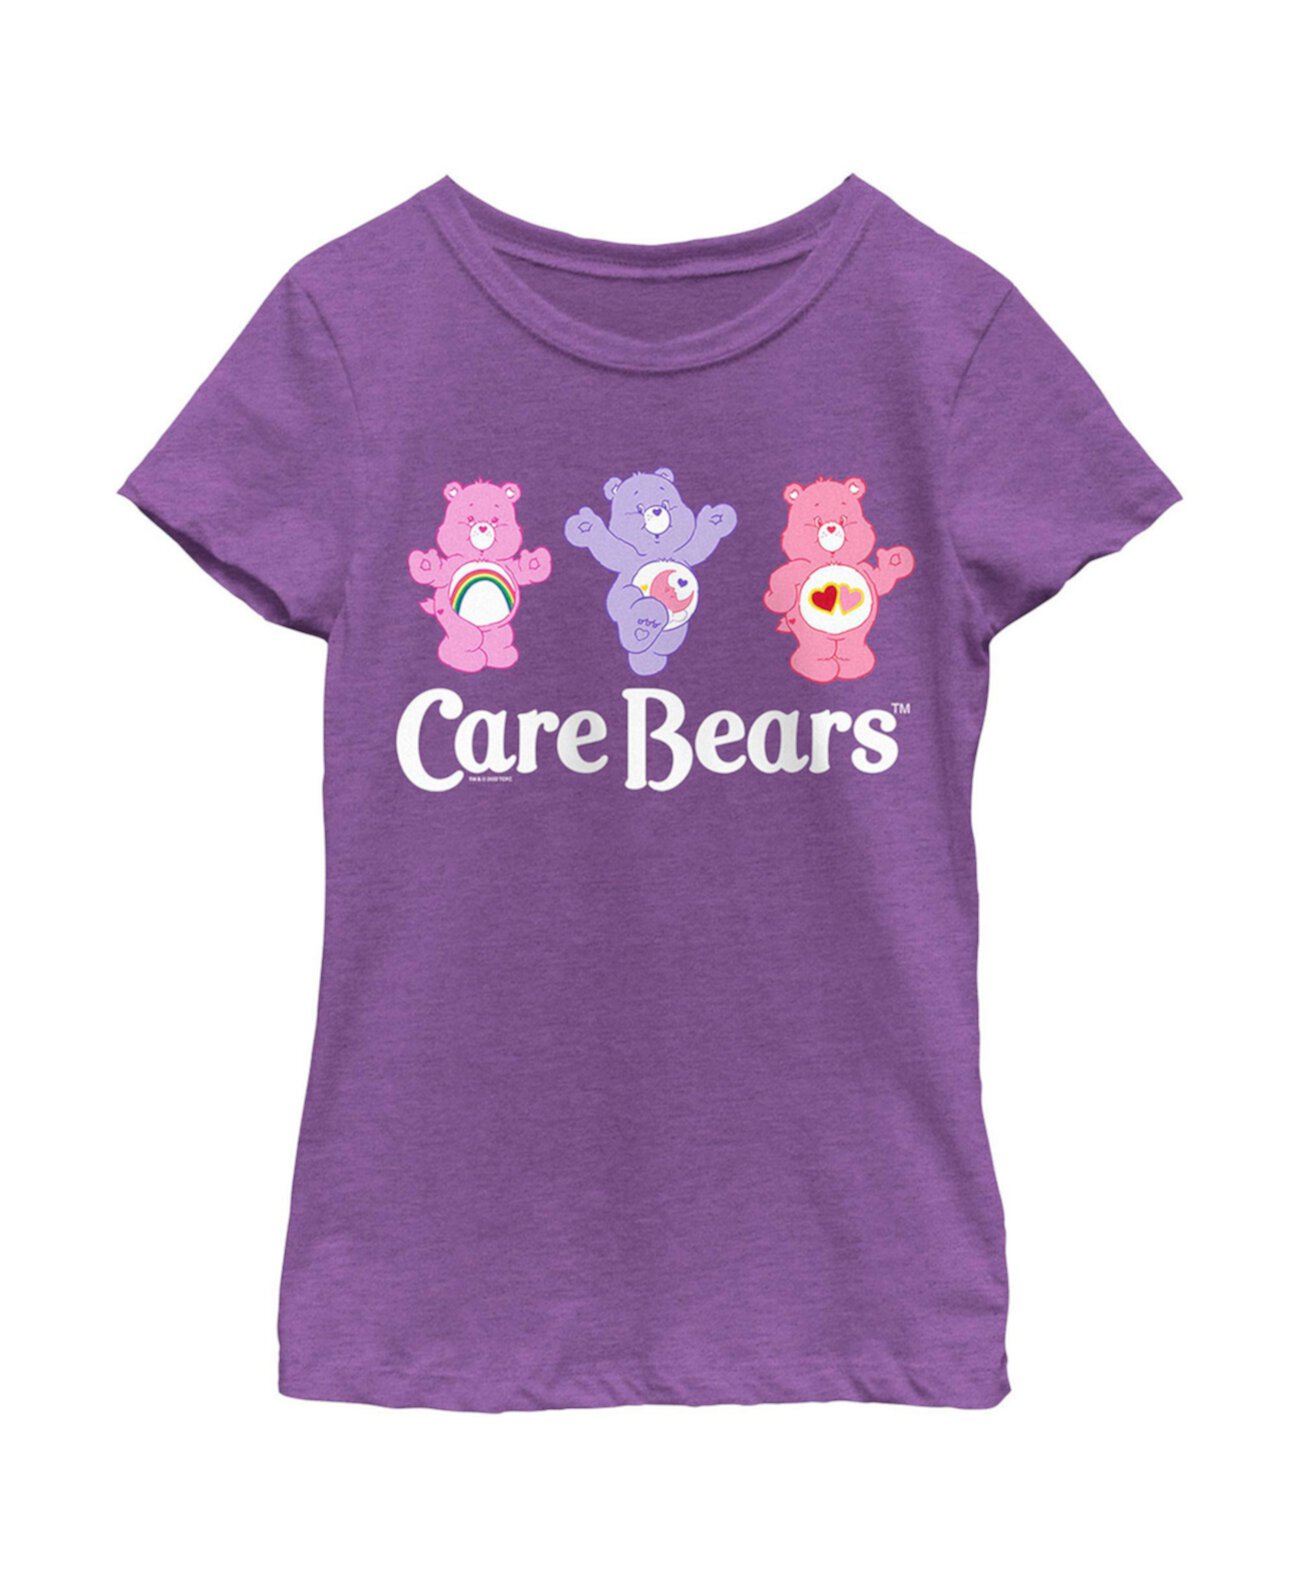 Детская футболка Happy Bears для девочек Care Bears